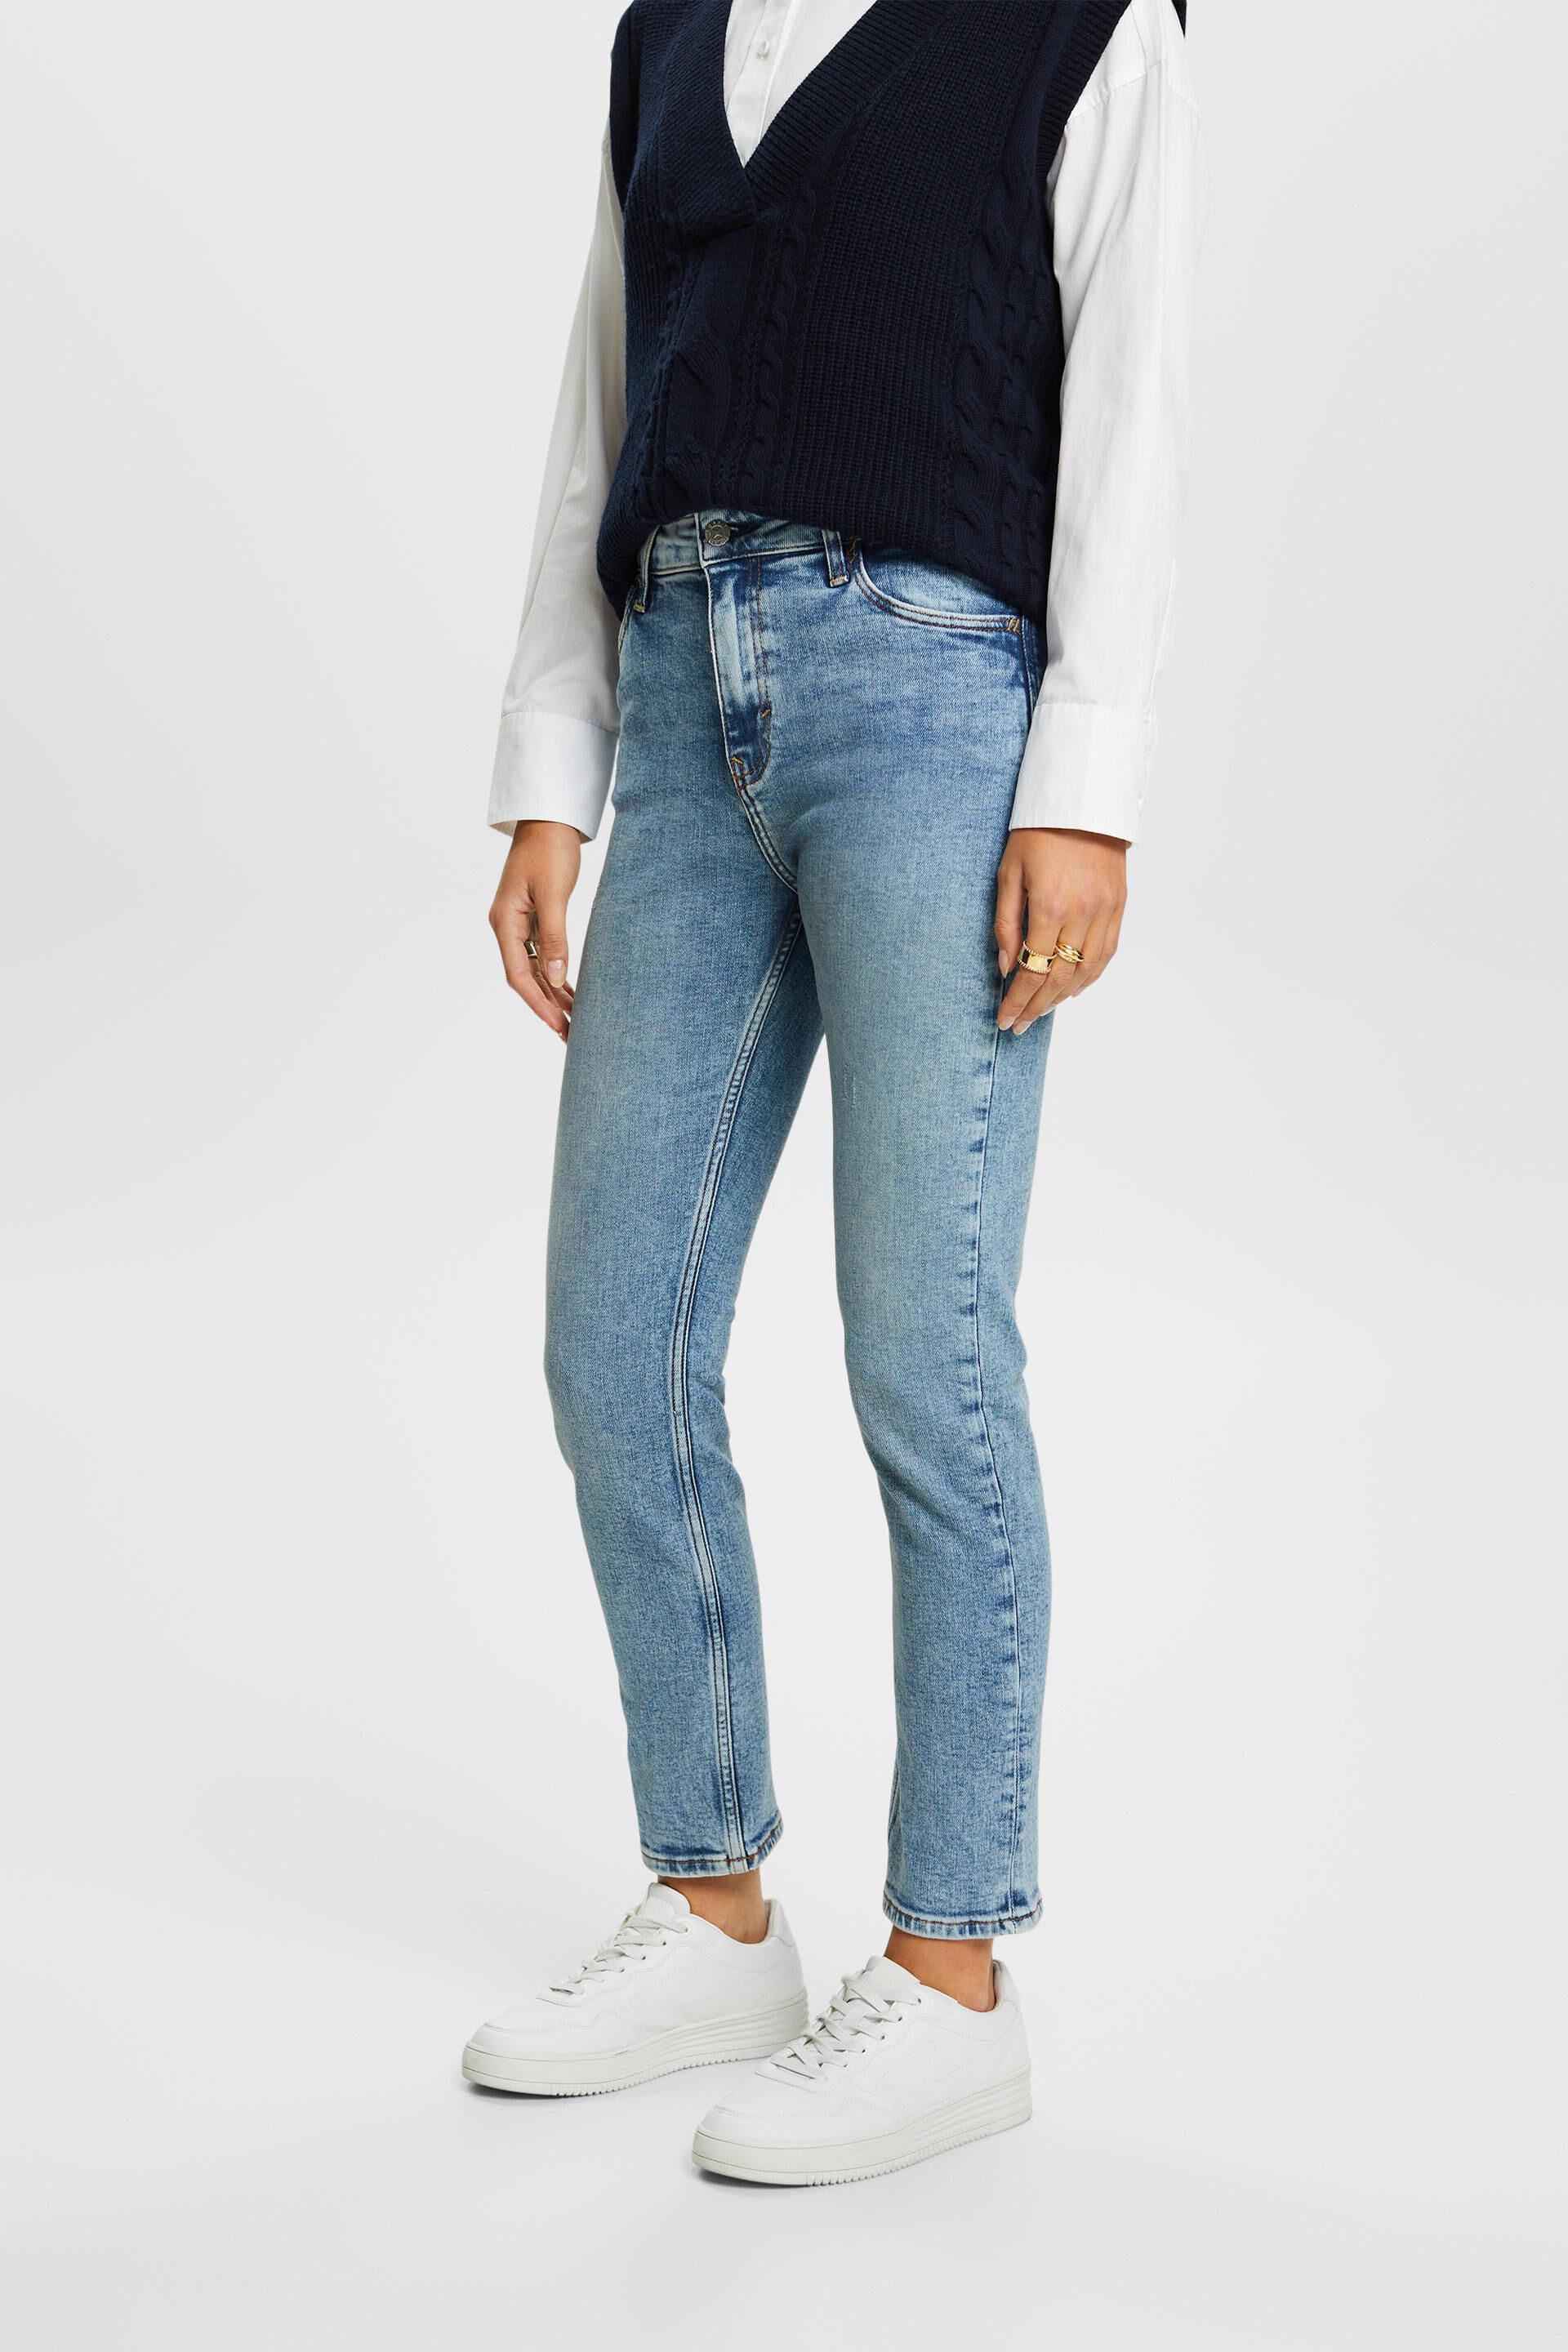 Esprit jeans slim fit Premium stretch